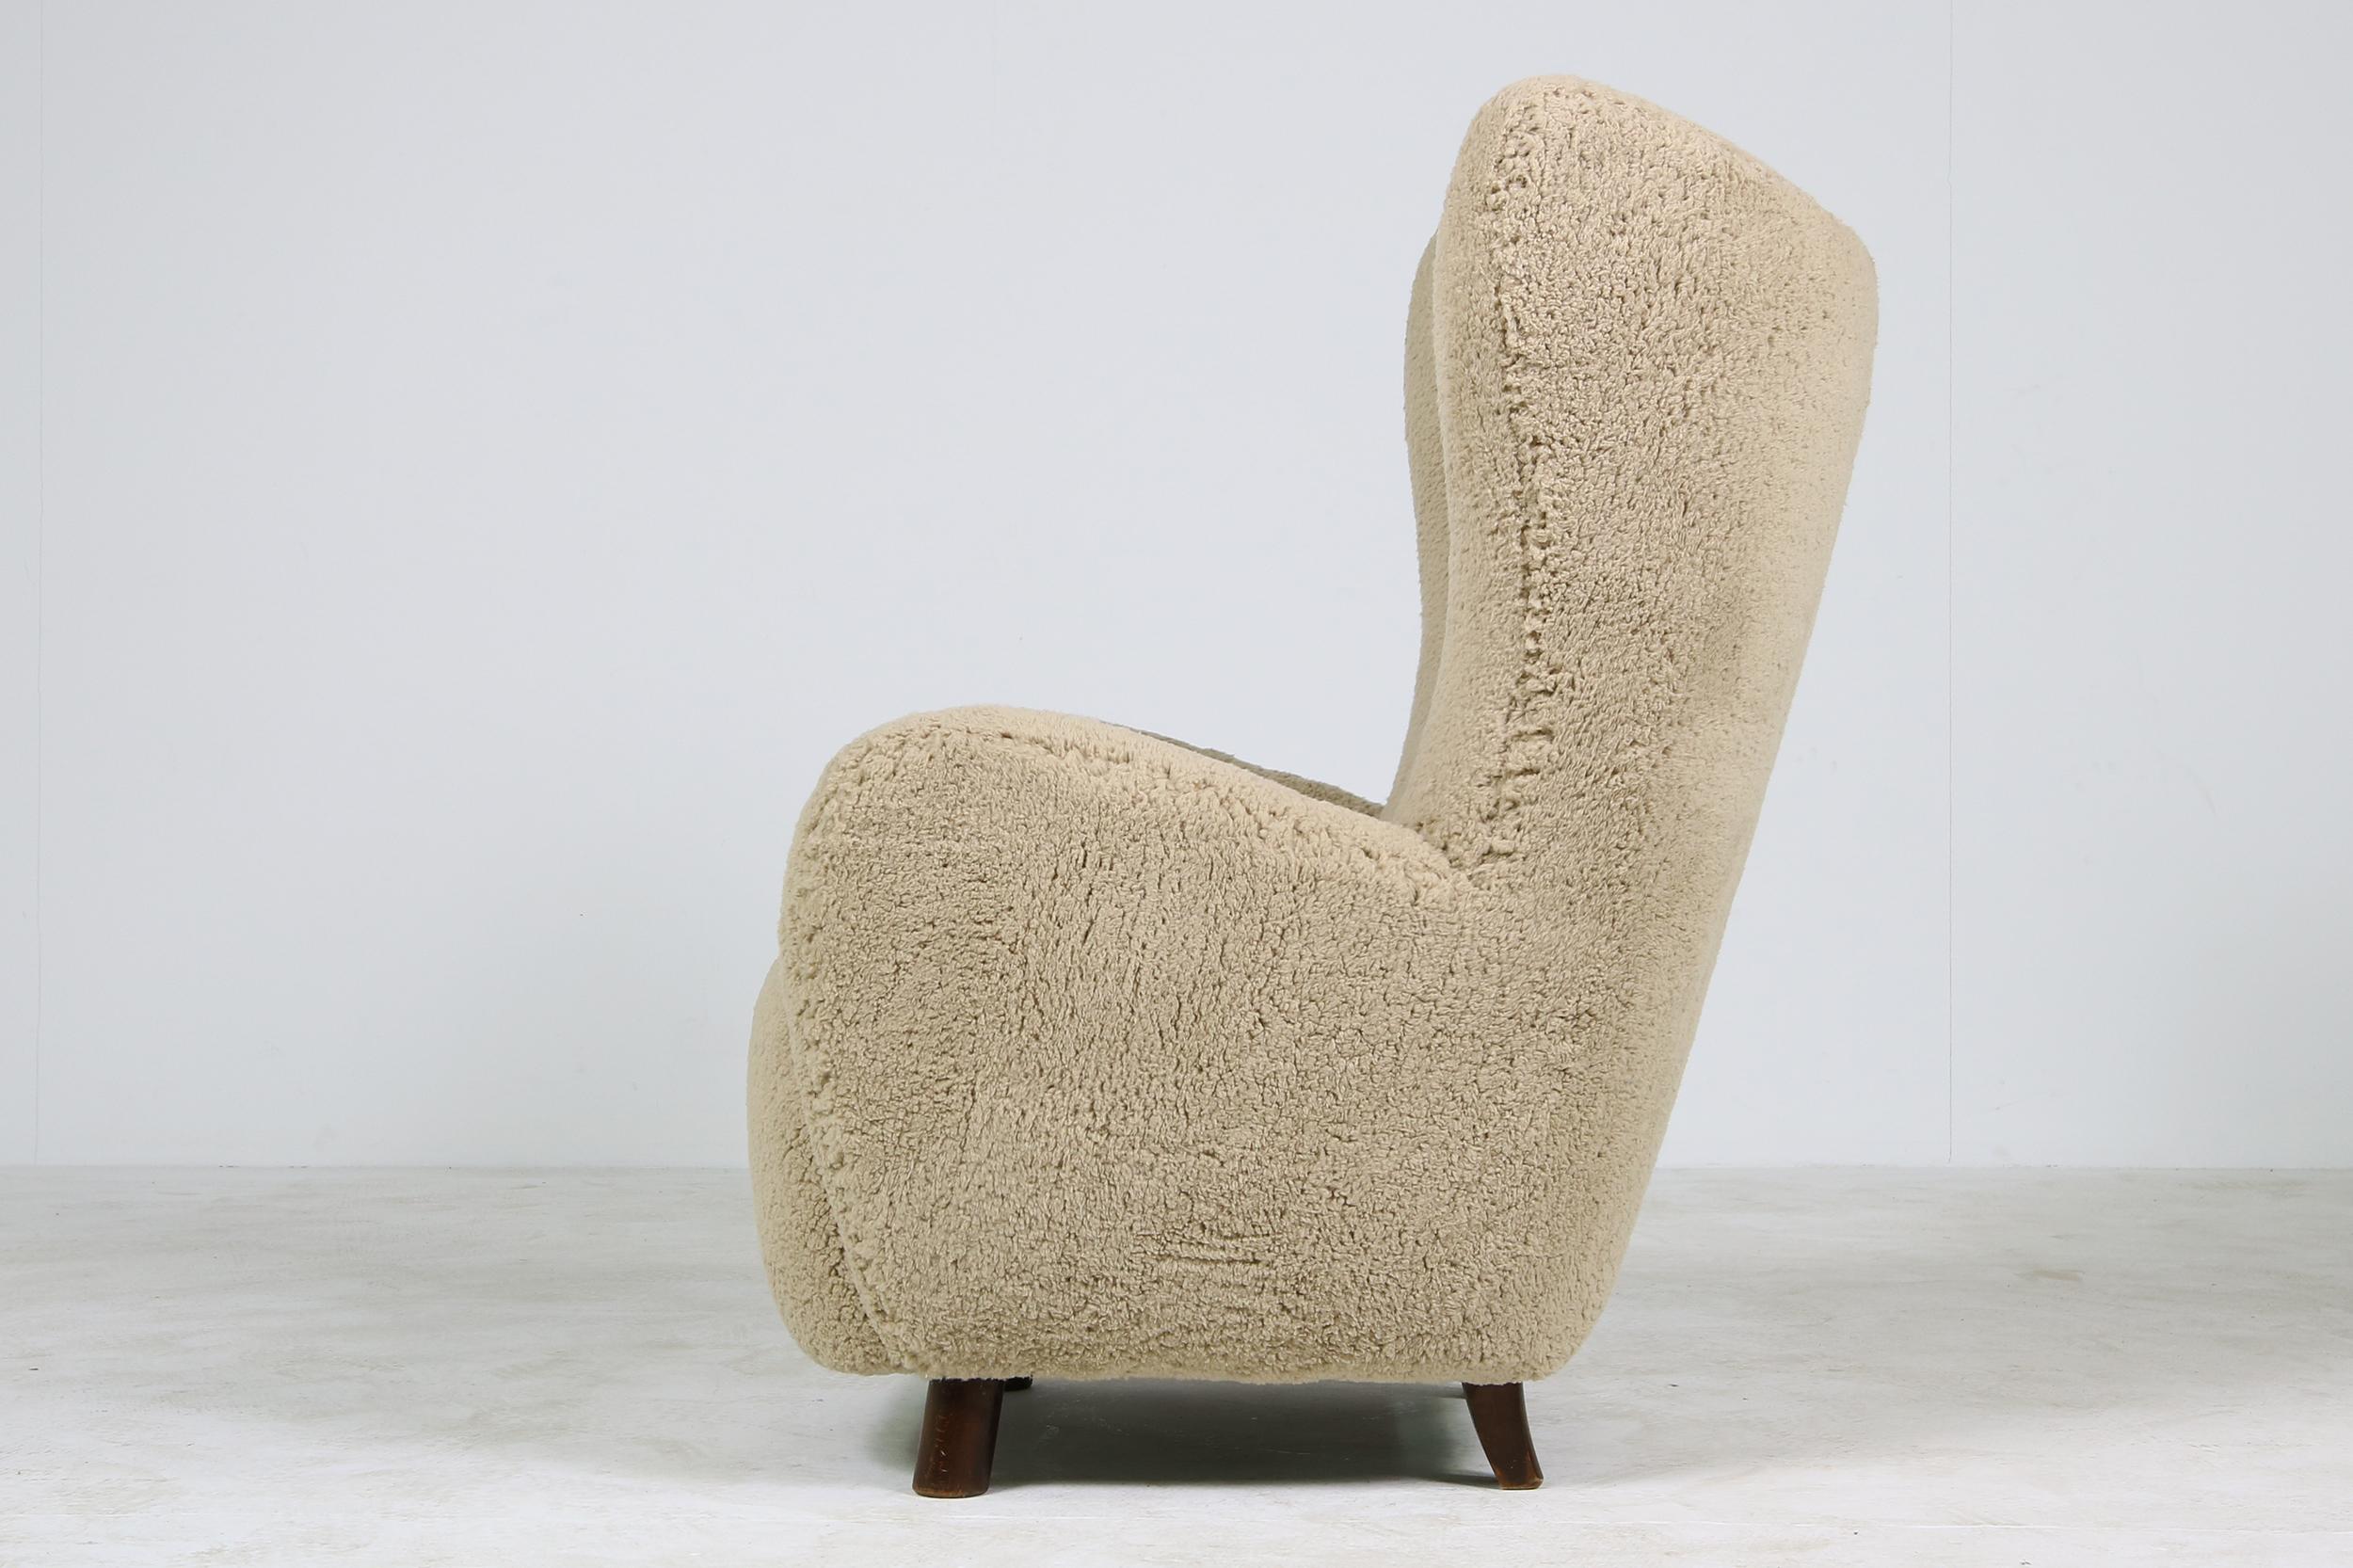 Mid-Century Modern Mogens Lassen Lounge Wingback Chair 1940 Denmark, Teddy Fur & Leather, Sheepskin